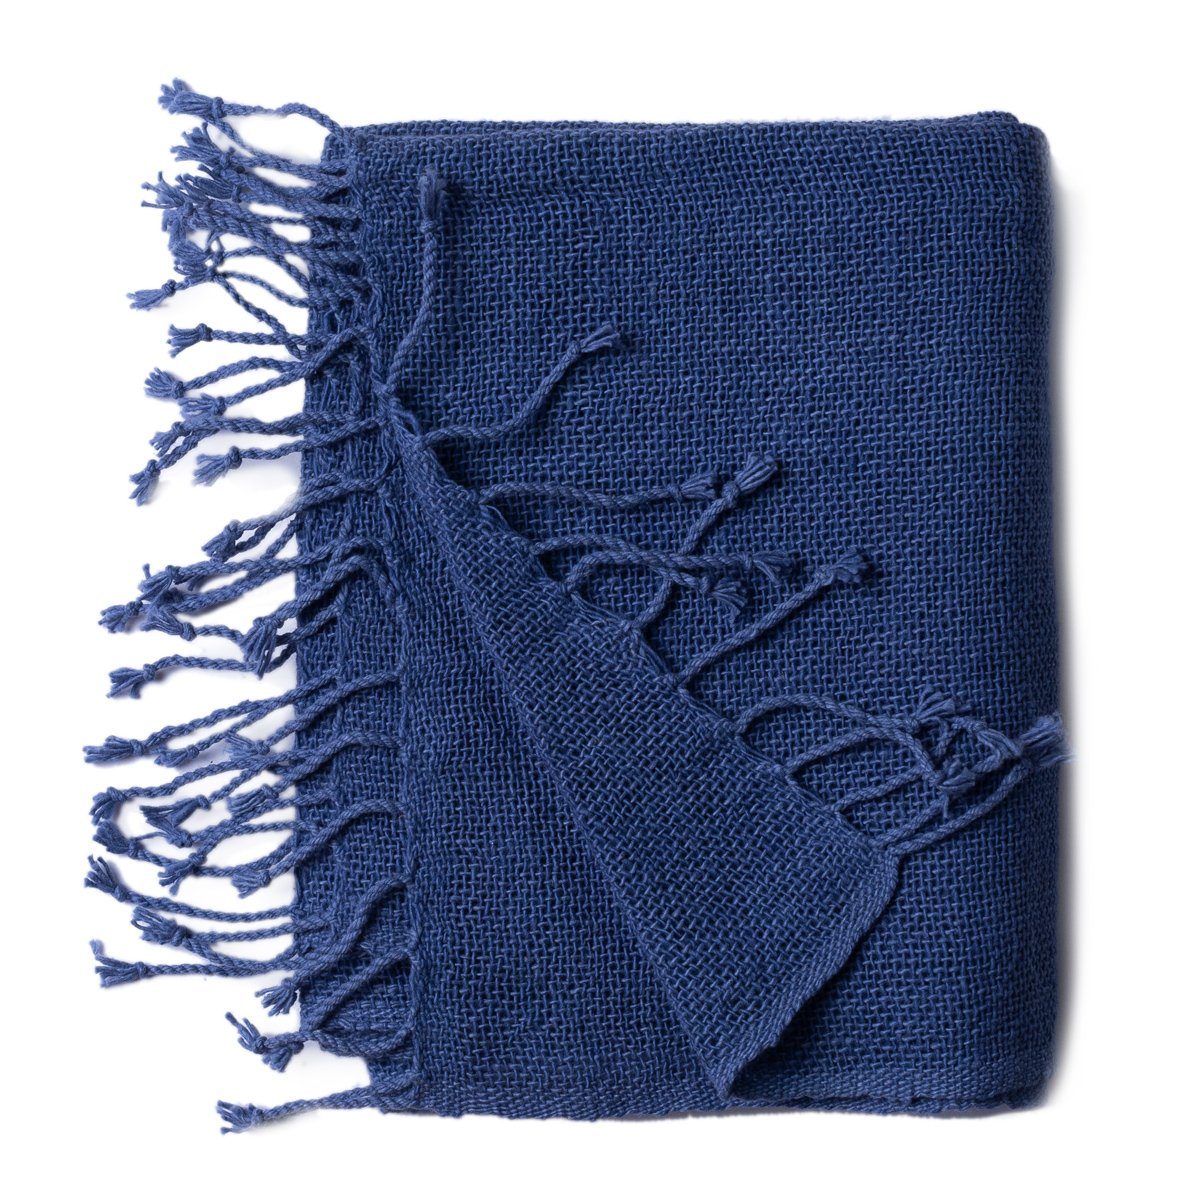 PANASIAM Halstuch warmer weicher Baumwollschal grob gewebt in verschiedenen Farben, auch als Schultertuch oder Schal im Herbst und Winter tragbar Blau